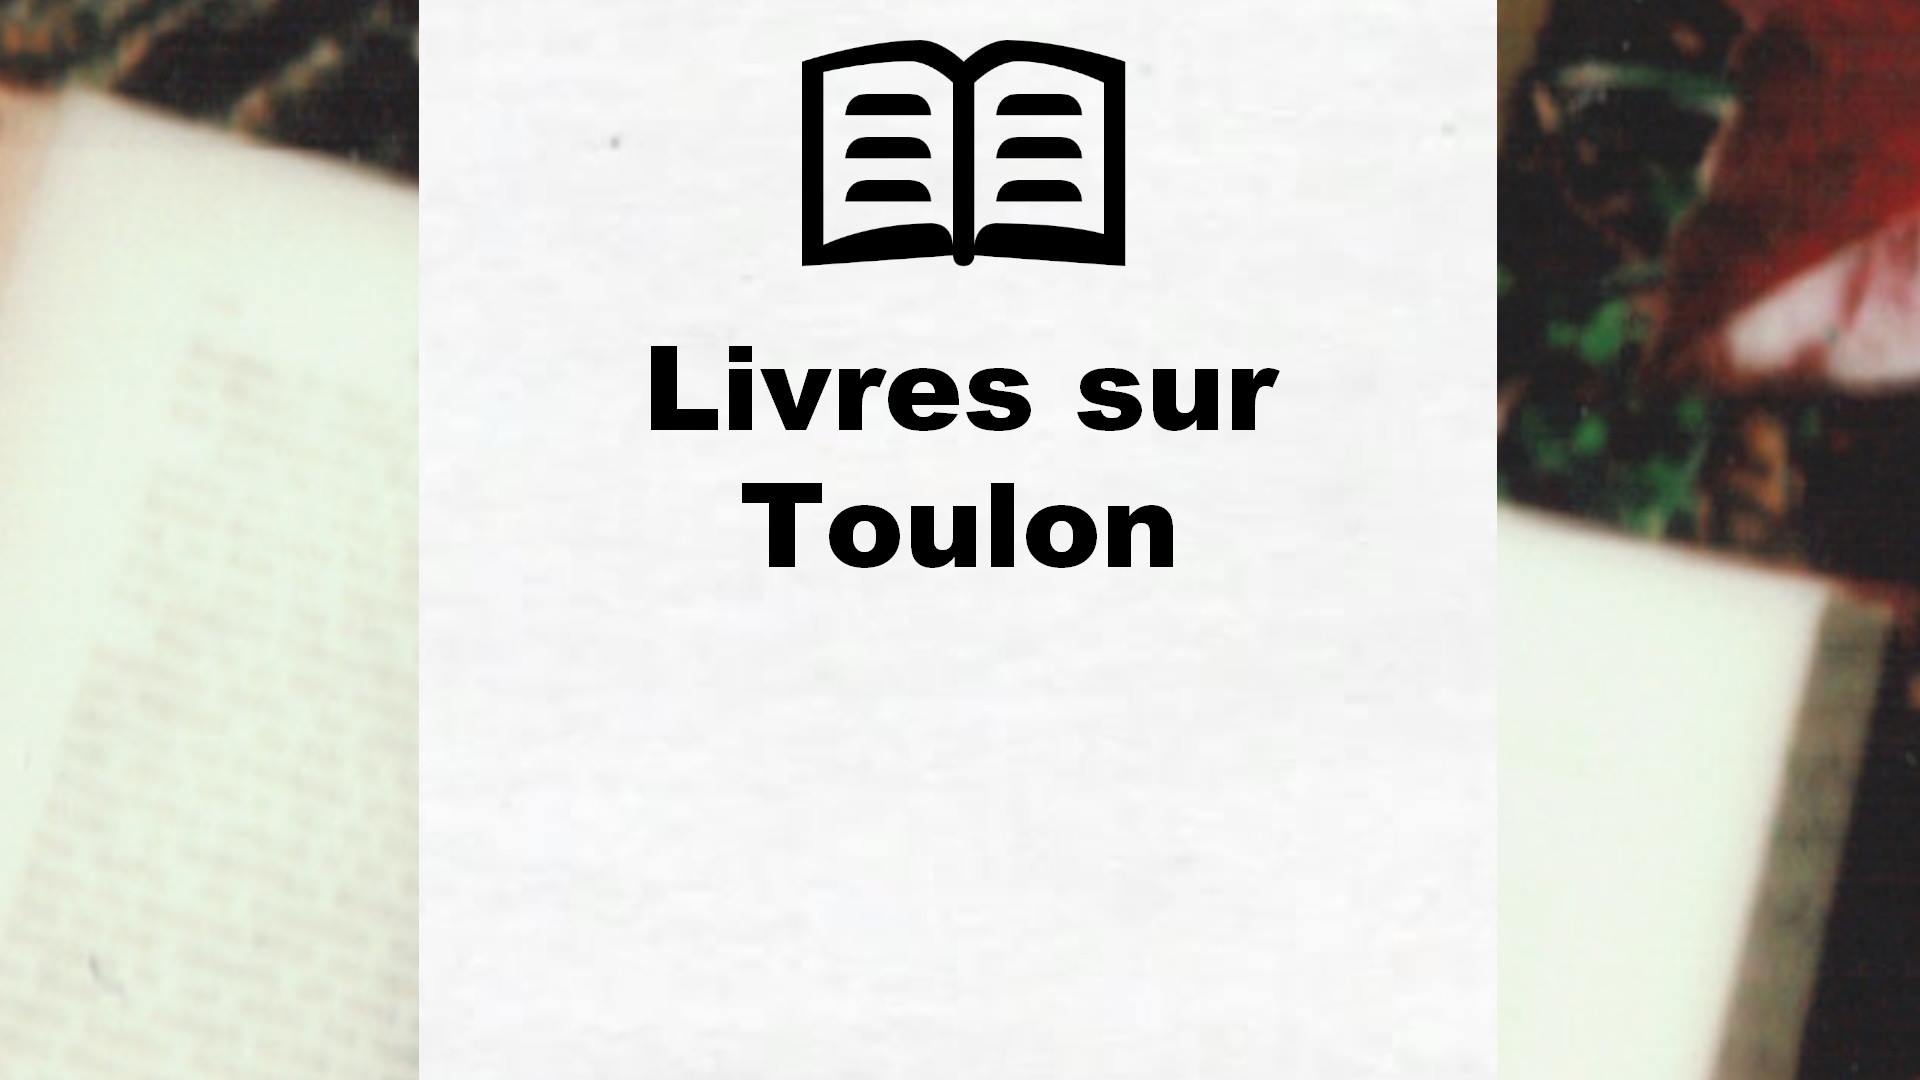 Livres sur Toulon